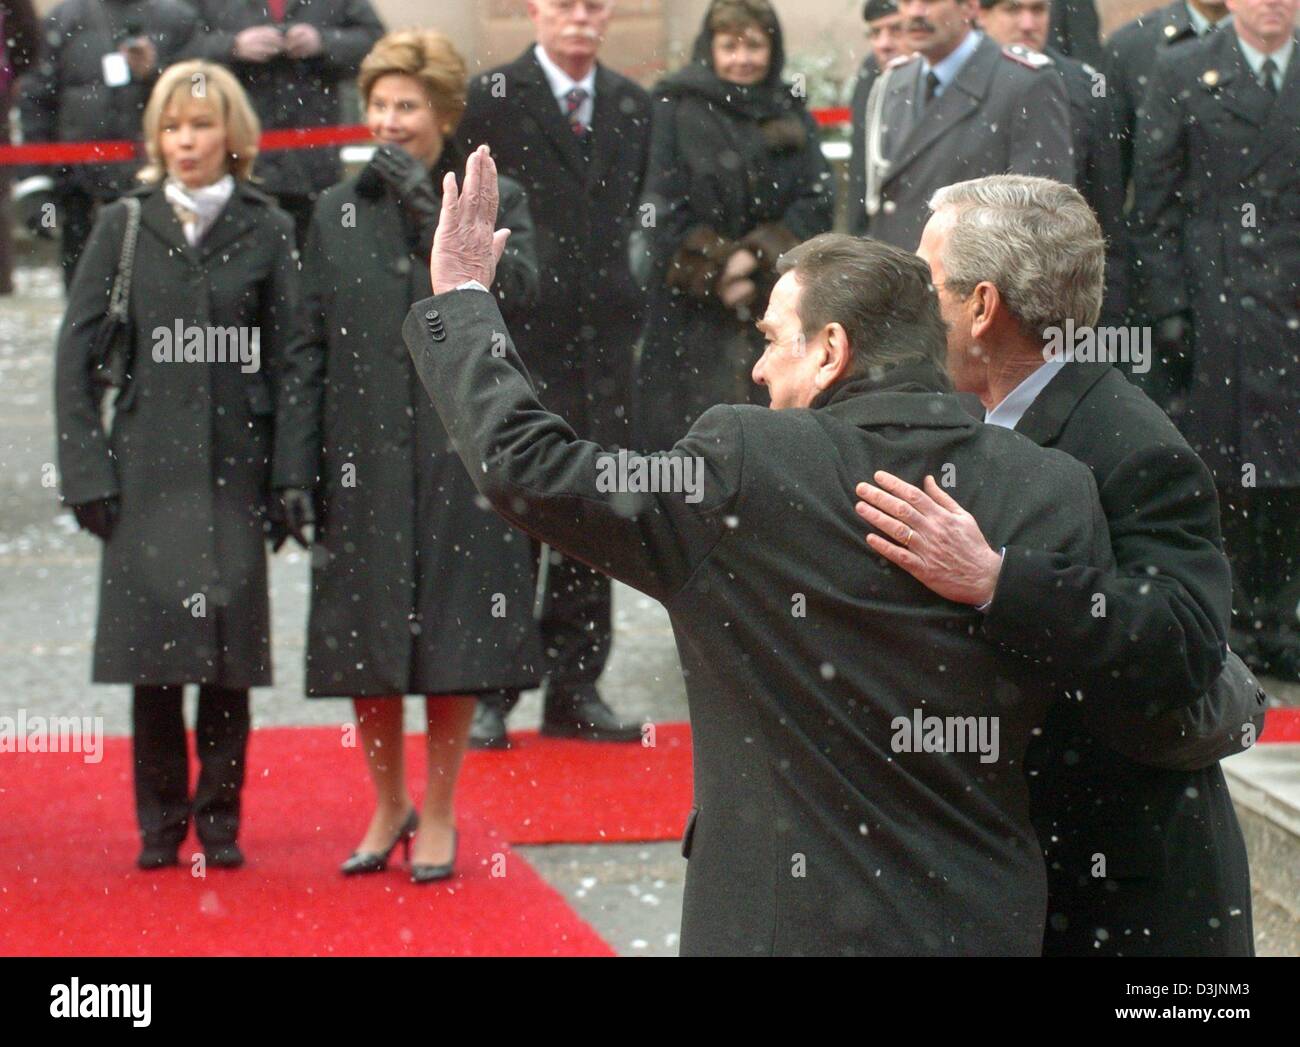 (Dpa) - US-Präsident George W. Bush (R, bedeckt) und Bundeskanzler Gerhard Schroeder (2. v. R) Lächeln und winken ihren Händen an die Fotografen während ihre Ehefrauen, Doris Schröder-Koepf (L) und U.S. First Lady Laura Bush (2n von L) Blick auf während des Empfangs in Mainz, Deutschland, Mittwoch, 23. Februar 2005. Bush zahlt einen eintägigen Besuch nach Deutschland auf seiner Tour durch Europa. Stockfoto